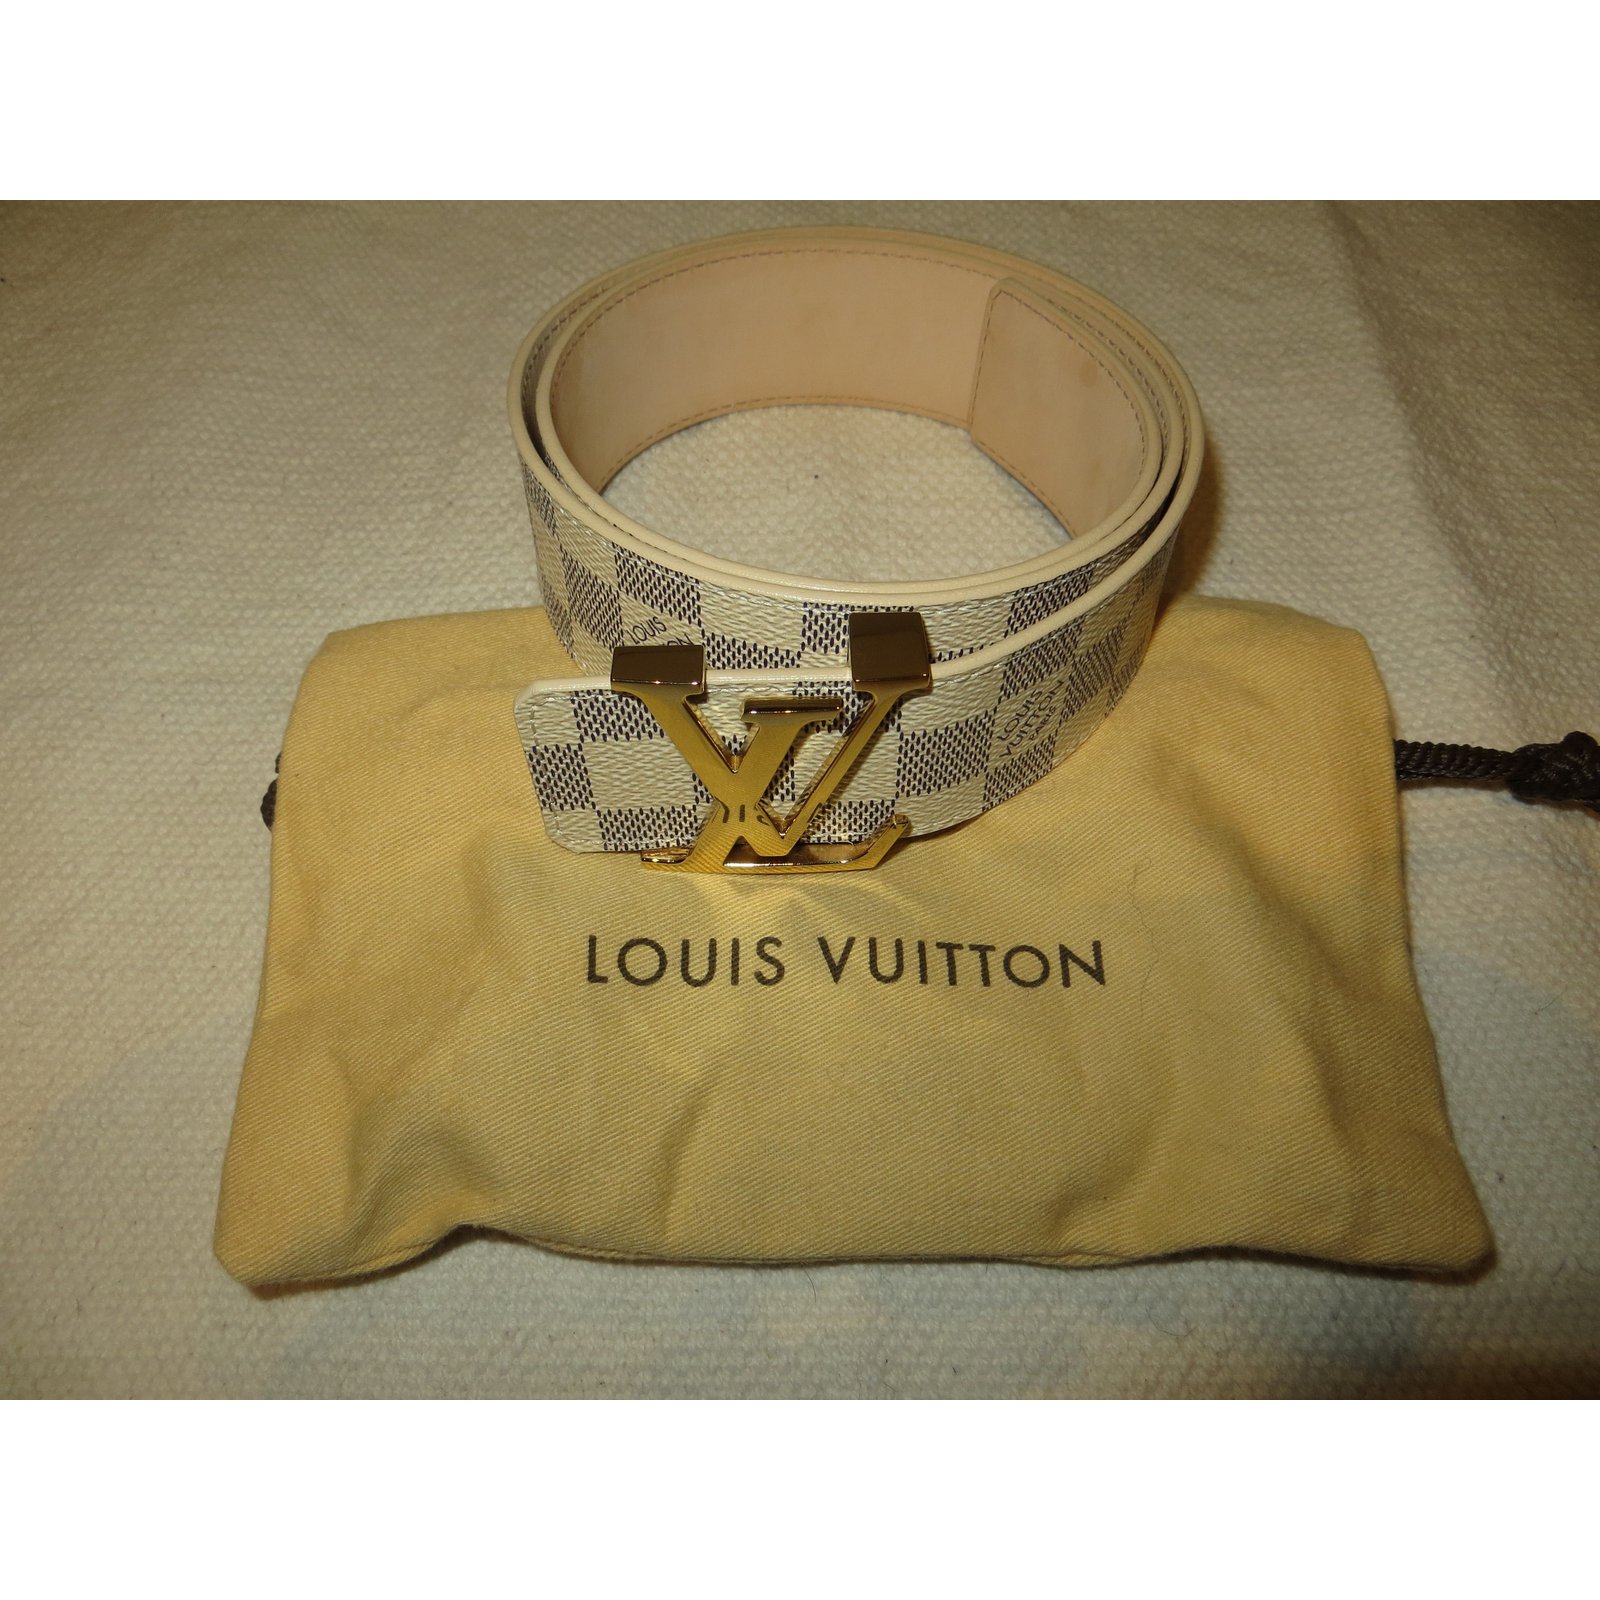 LOUIS VUITTON M9609 DamierAzur LV Ceinture Initial Pin buckle belt White